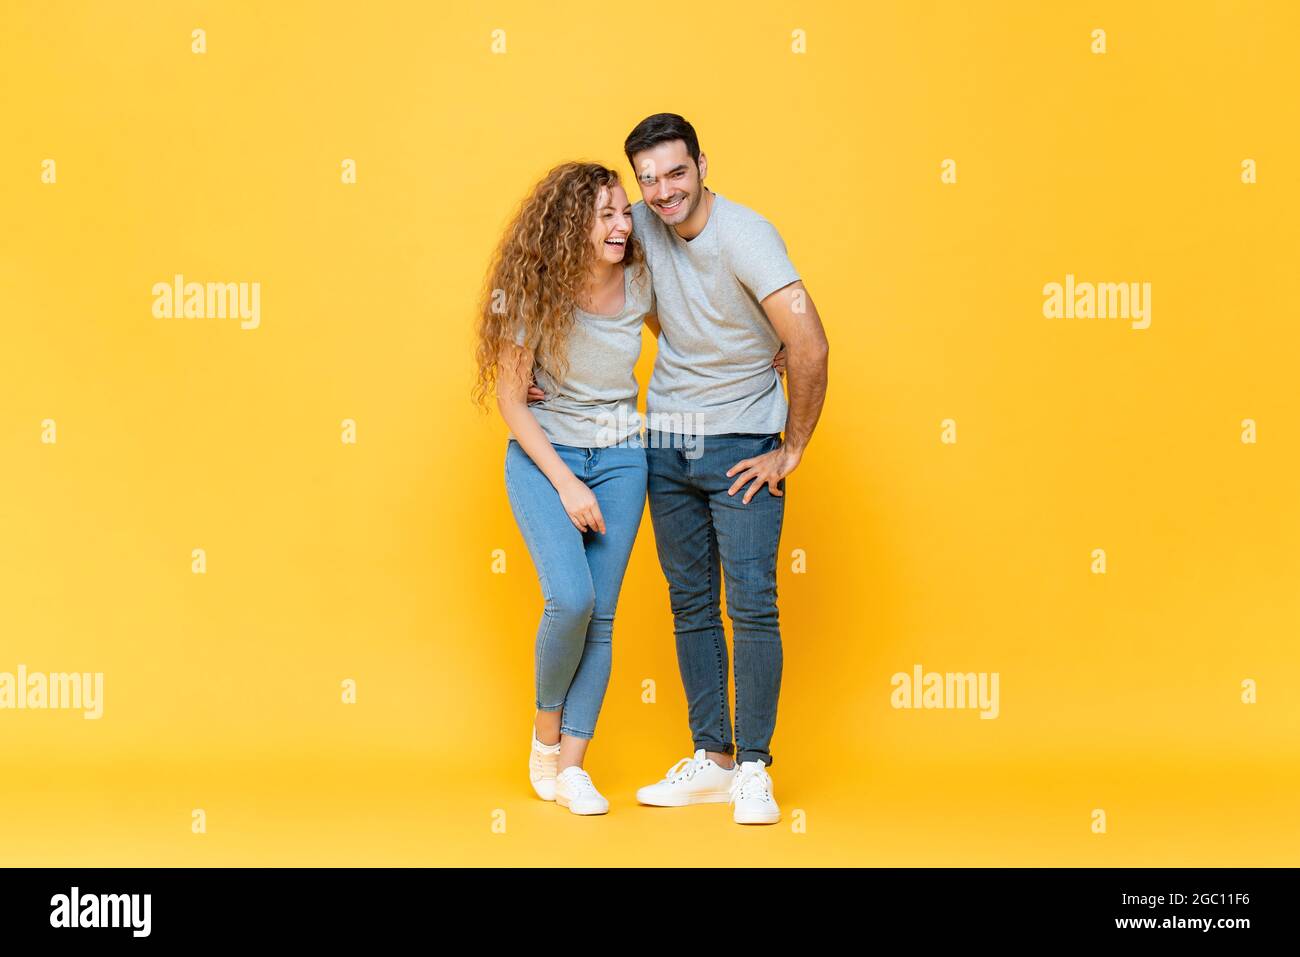 In voller Länge Porträt von jungen glücklich interracial Millennial Paar halten sich gegenseitig und lachen in isolierten gelben Studio Hintergrund Stockfoto